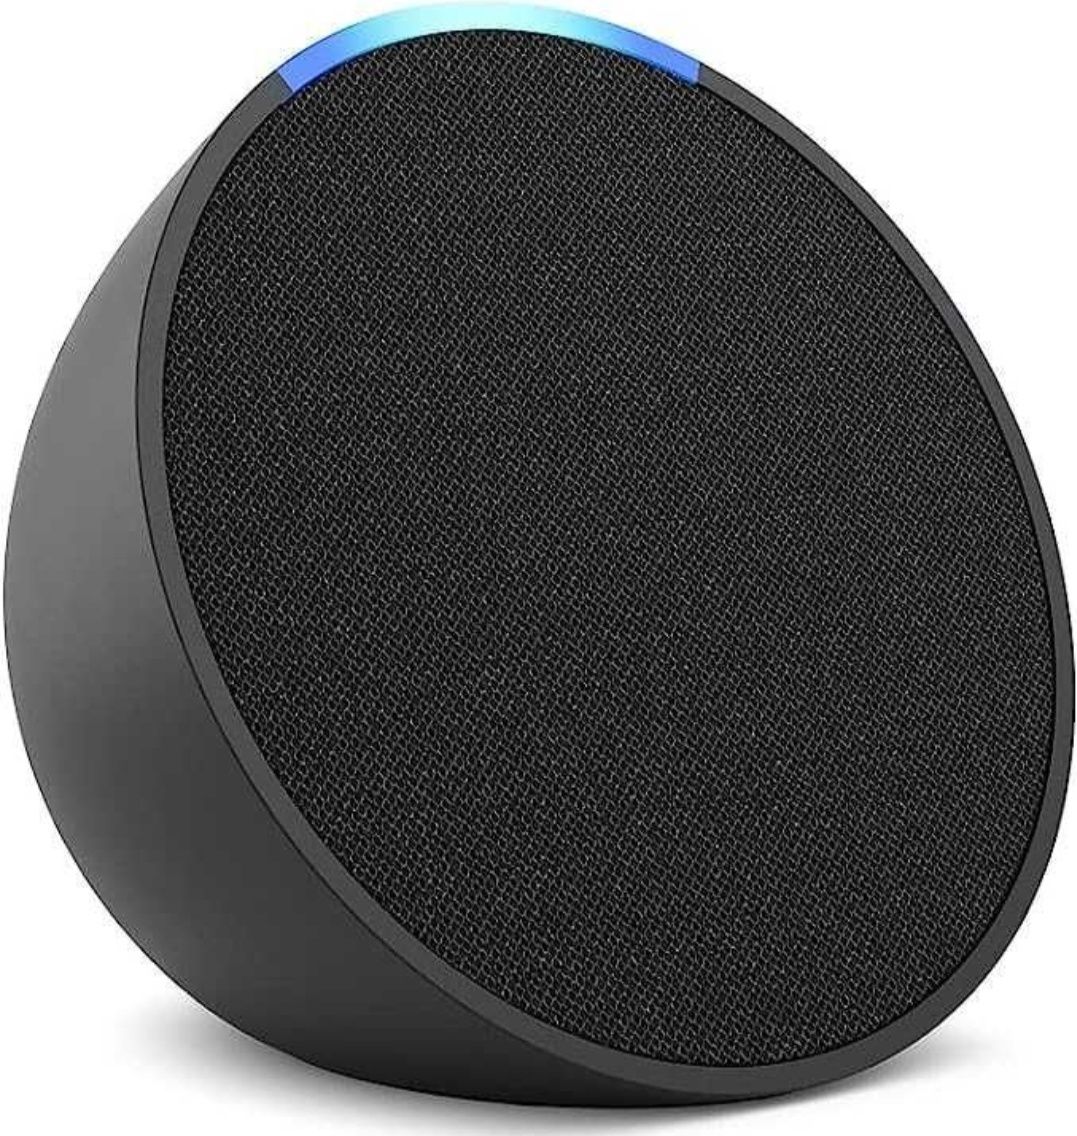 Amazon Alexa Echo POP geração NOVA